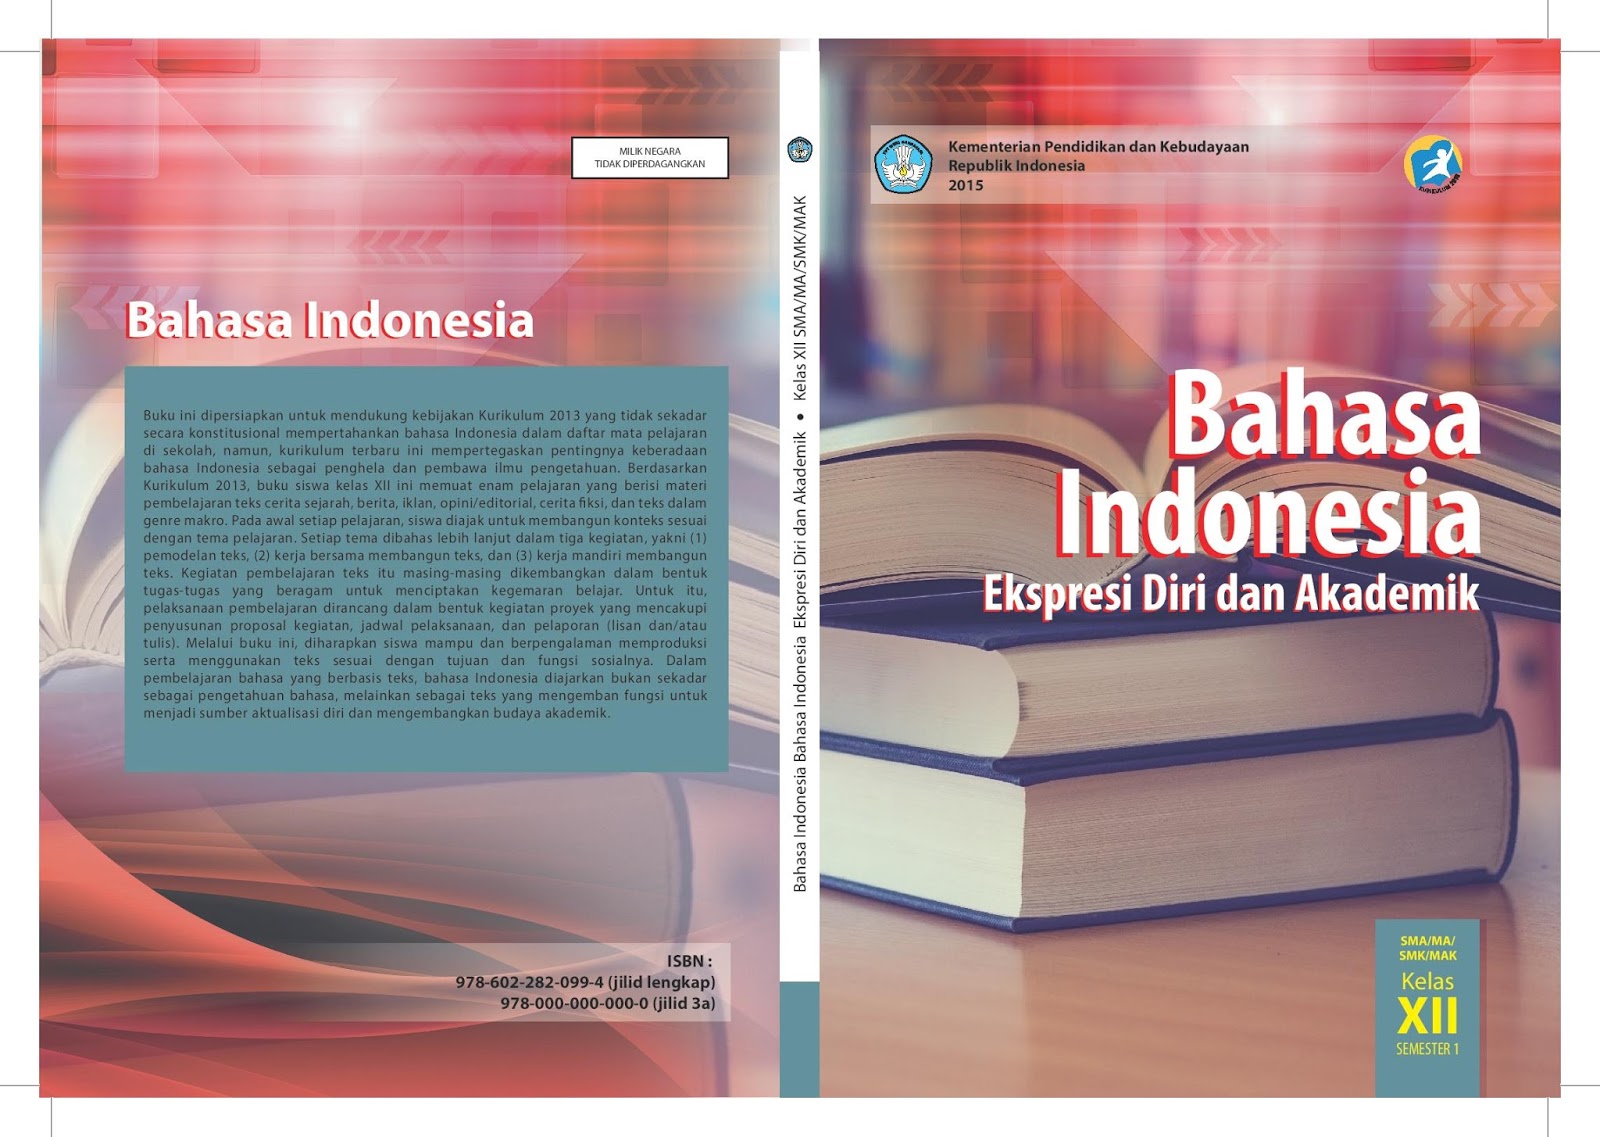 Tugas Bahasa Indonesia Halaman 21 kelas XII buku paket kurikulum 2013